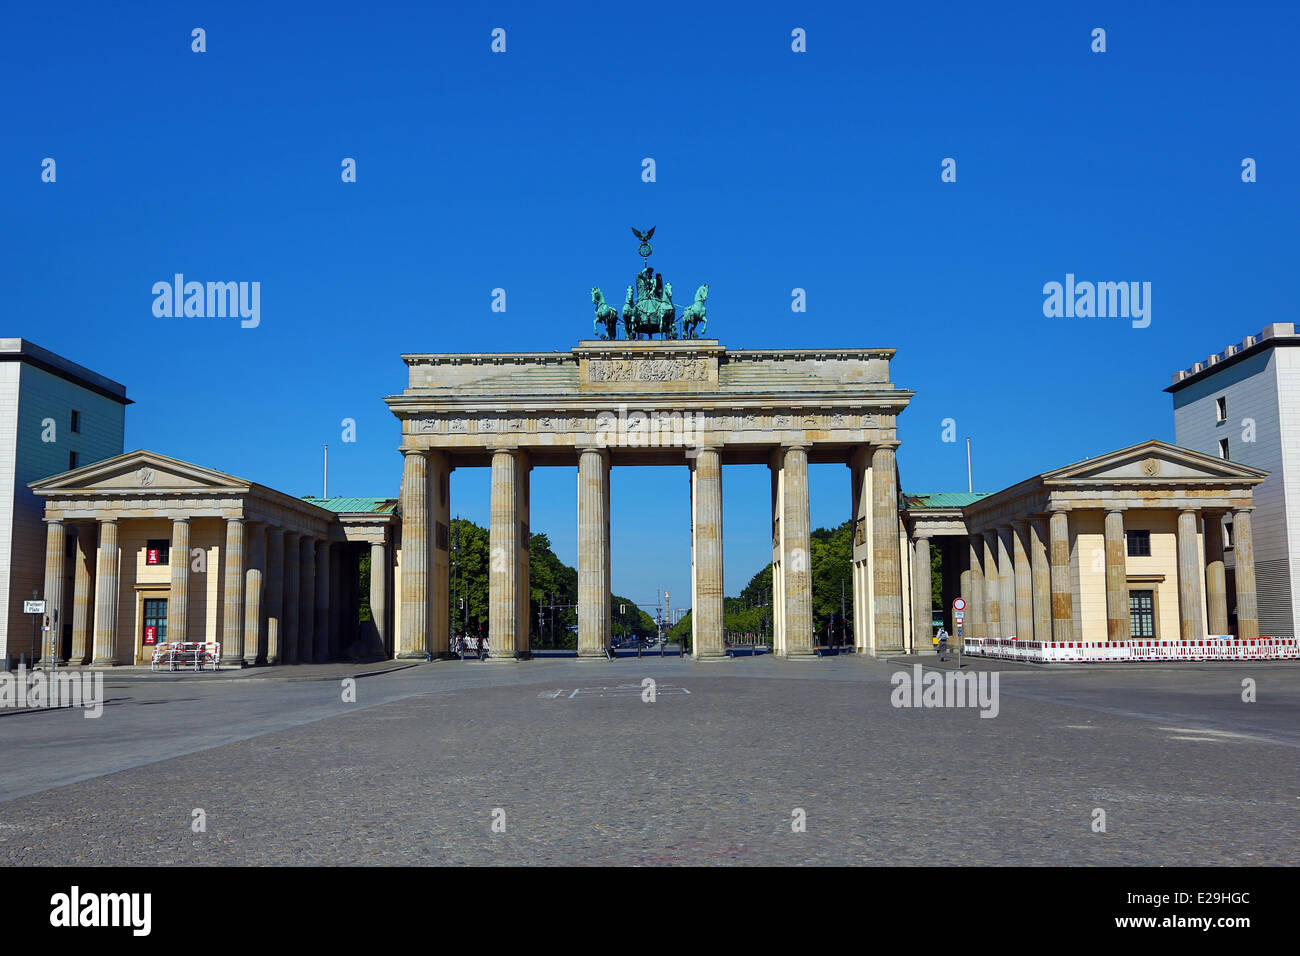 La porte de Brandebourg, Brandenburger Tor, Arche de triomphe néoclassique à Berlin, Allemagne Banque D'Images